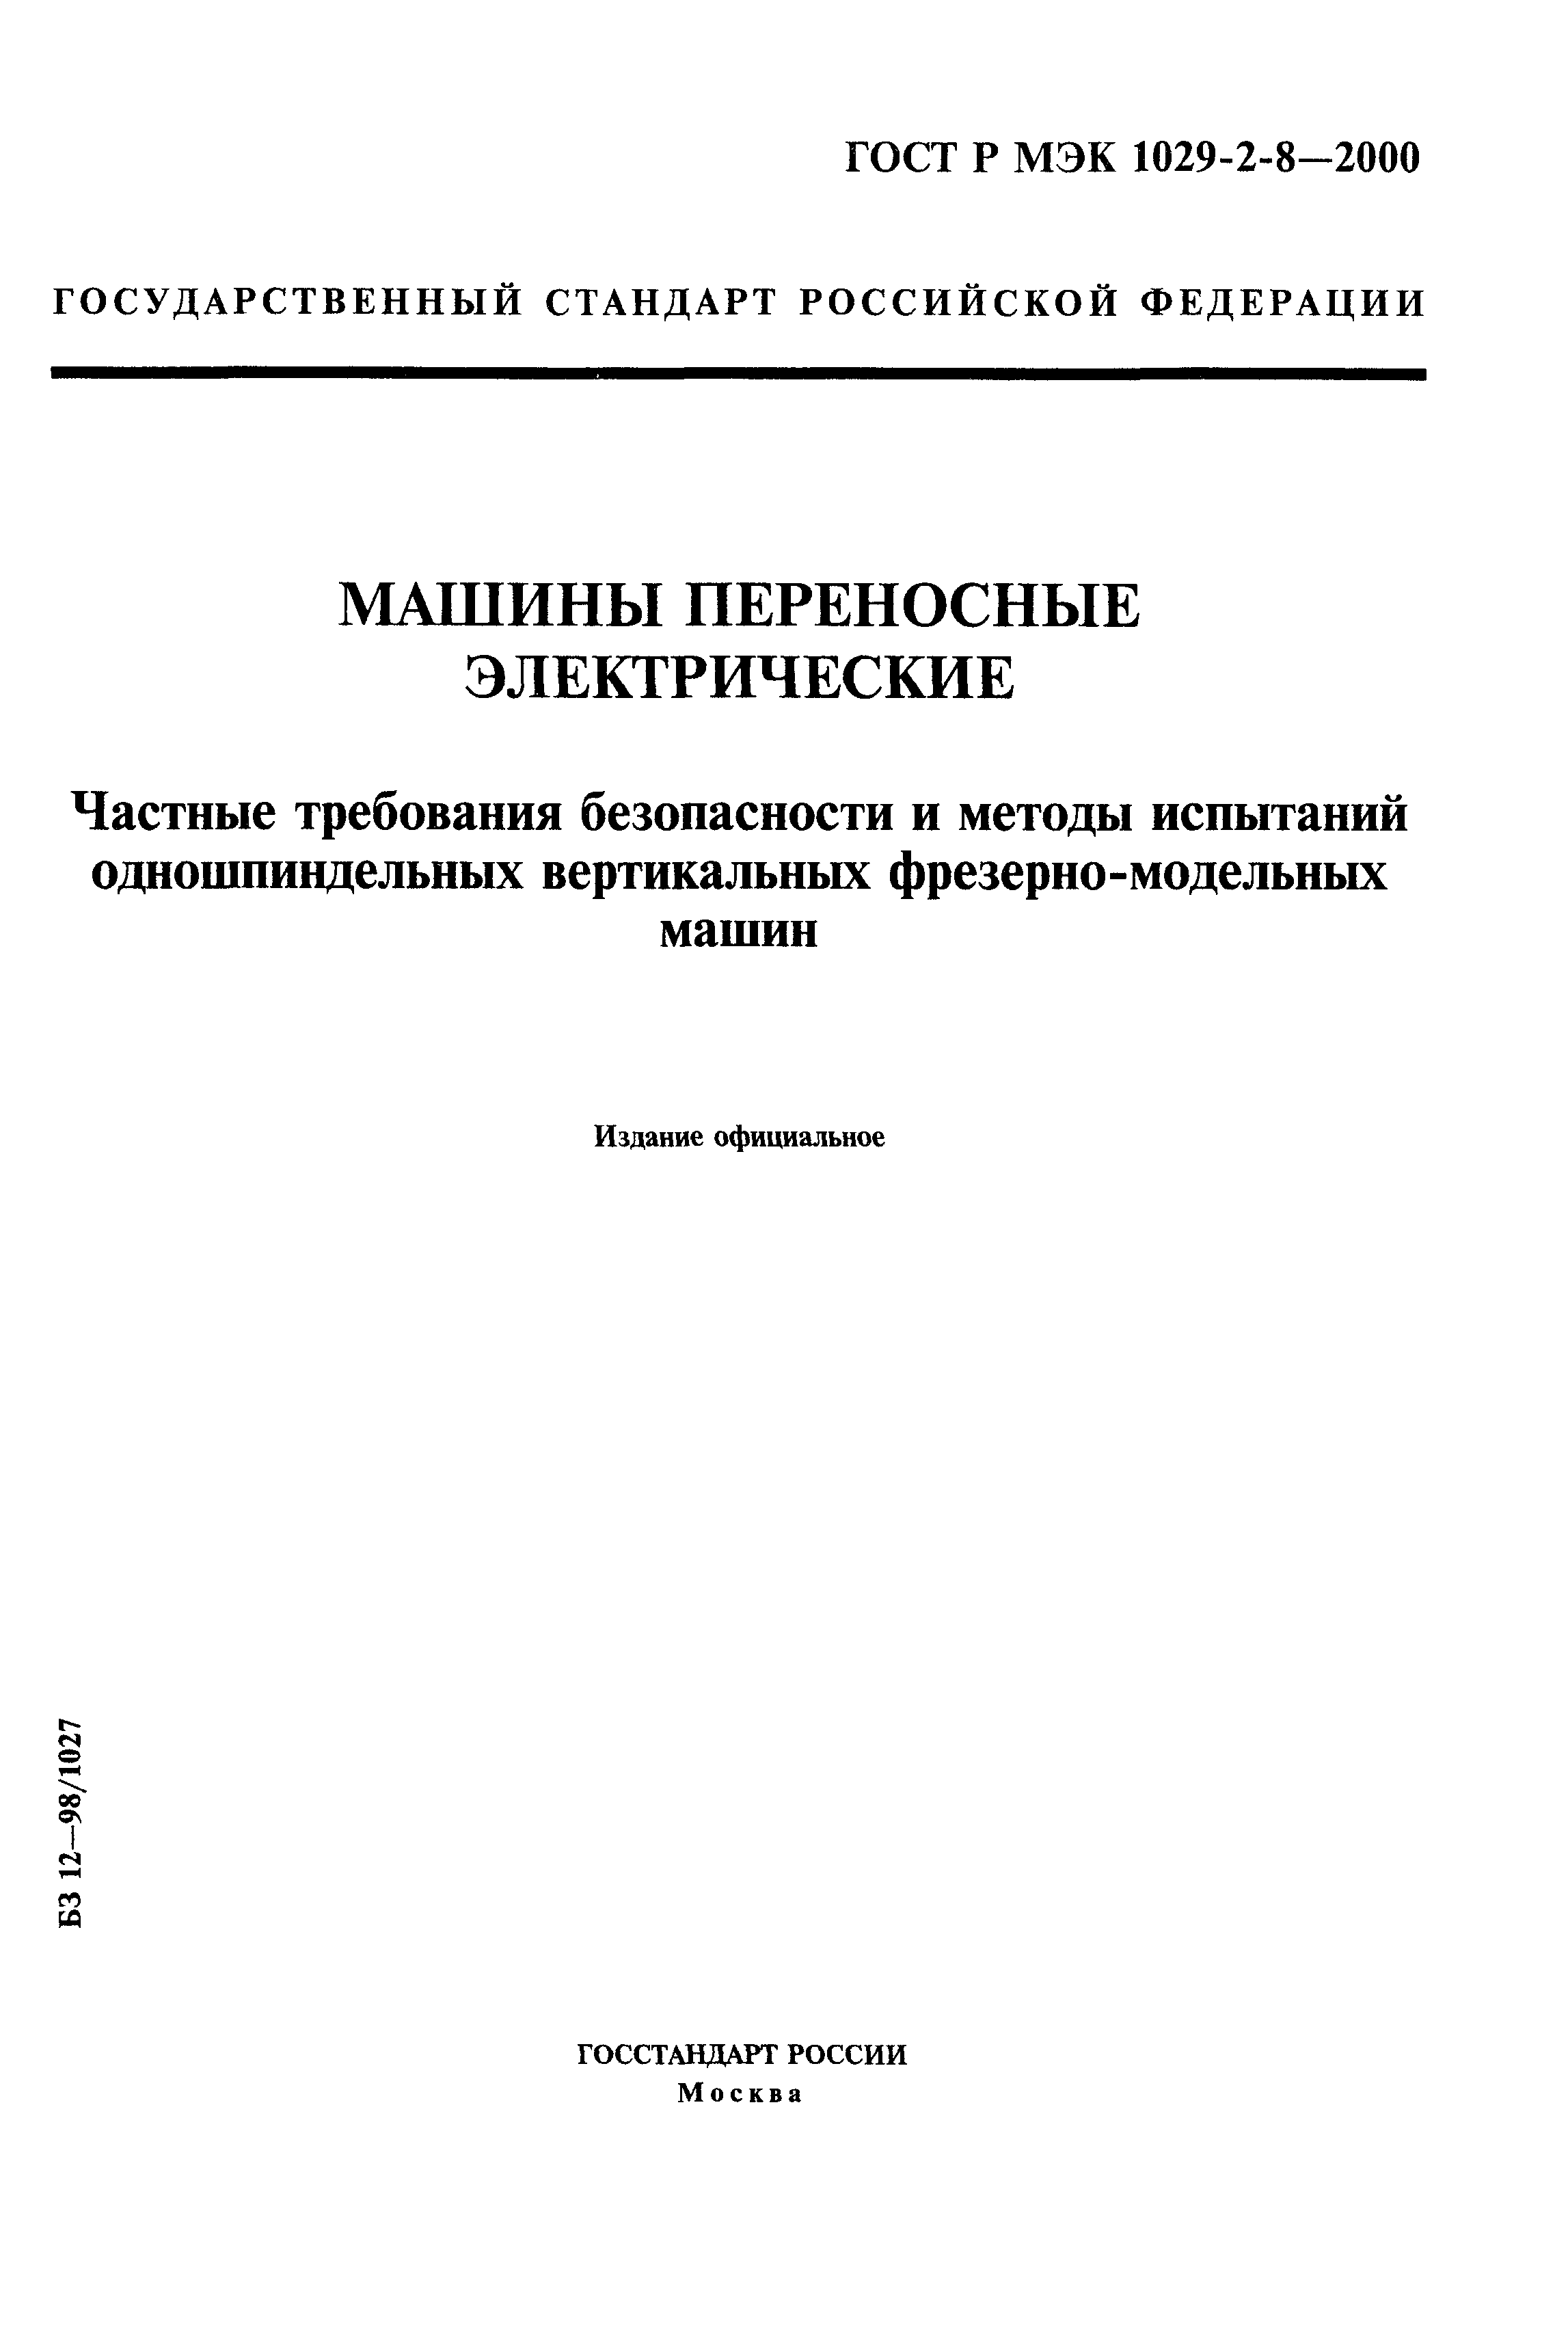 ГОСТ Р МЭК 1029-2-8-2000